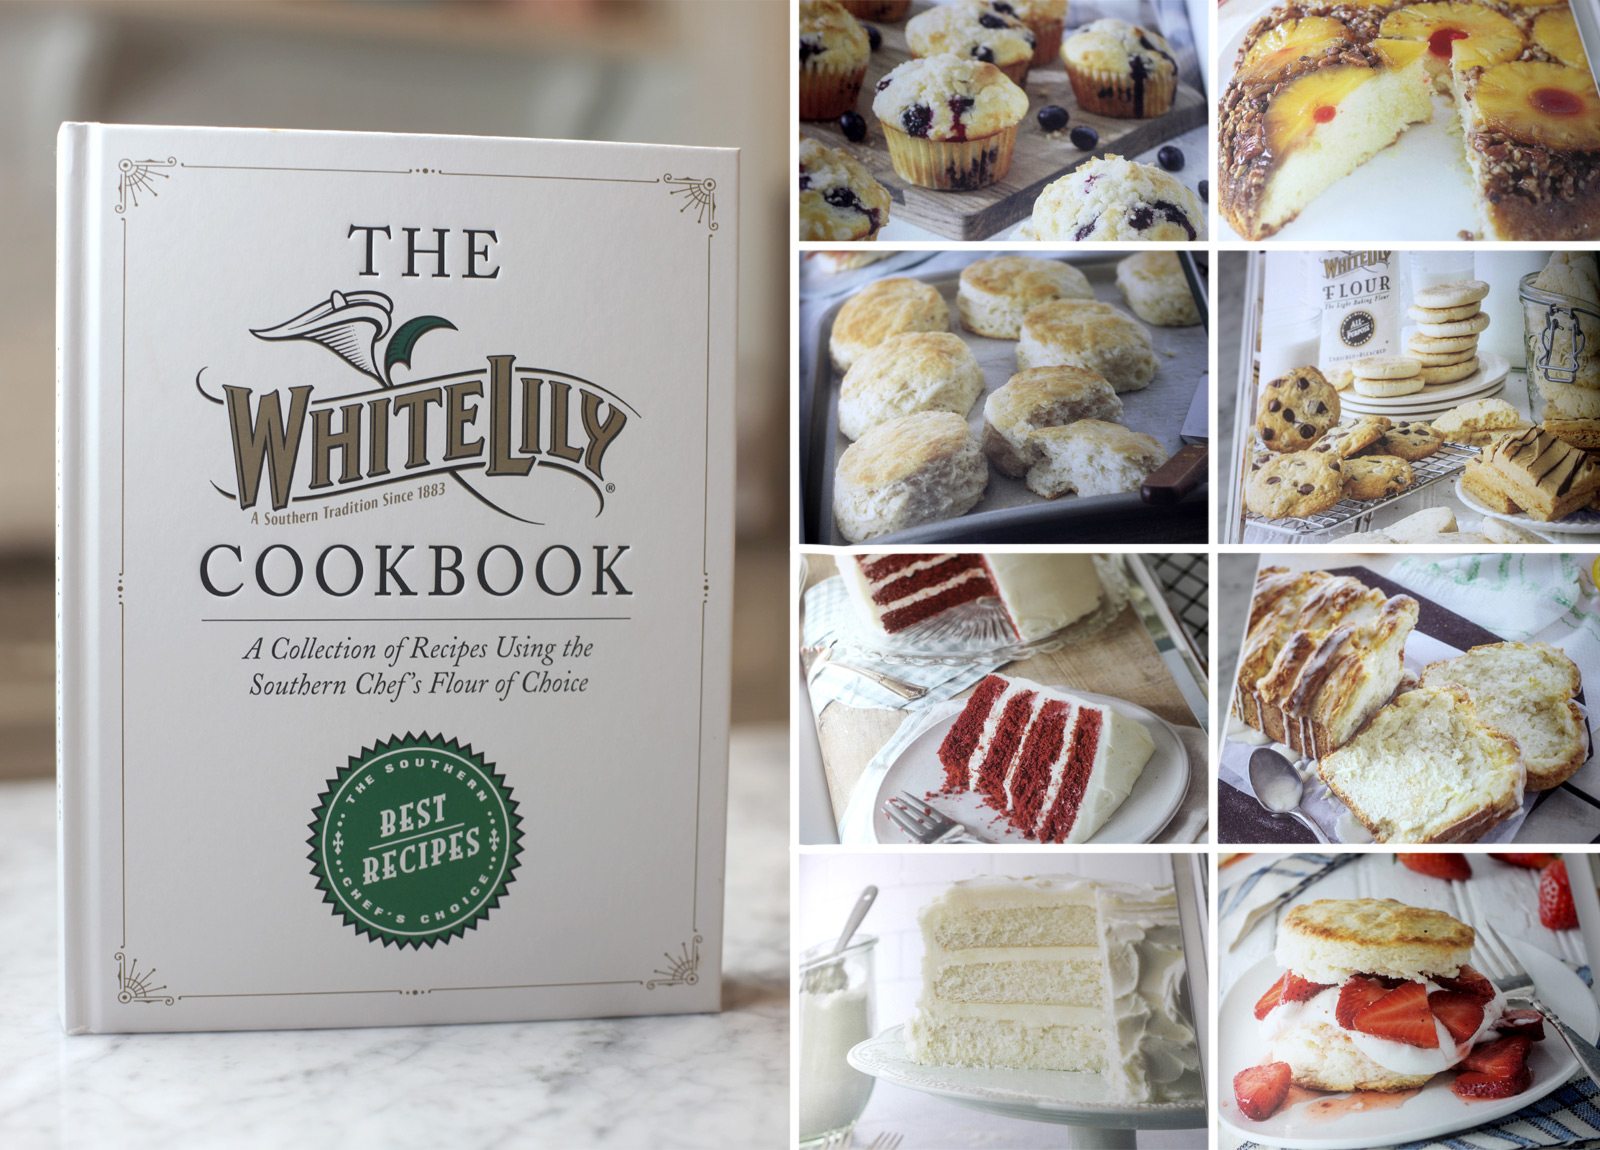 A fehér liliom szakácskönyv